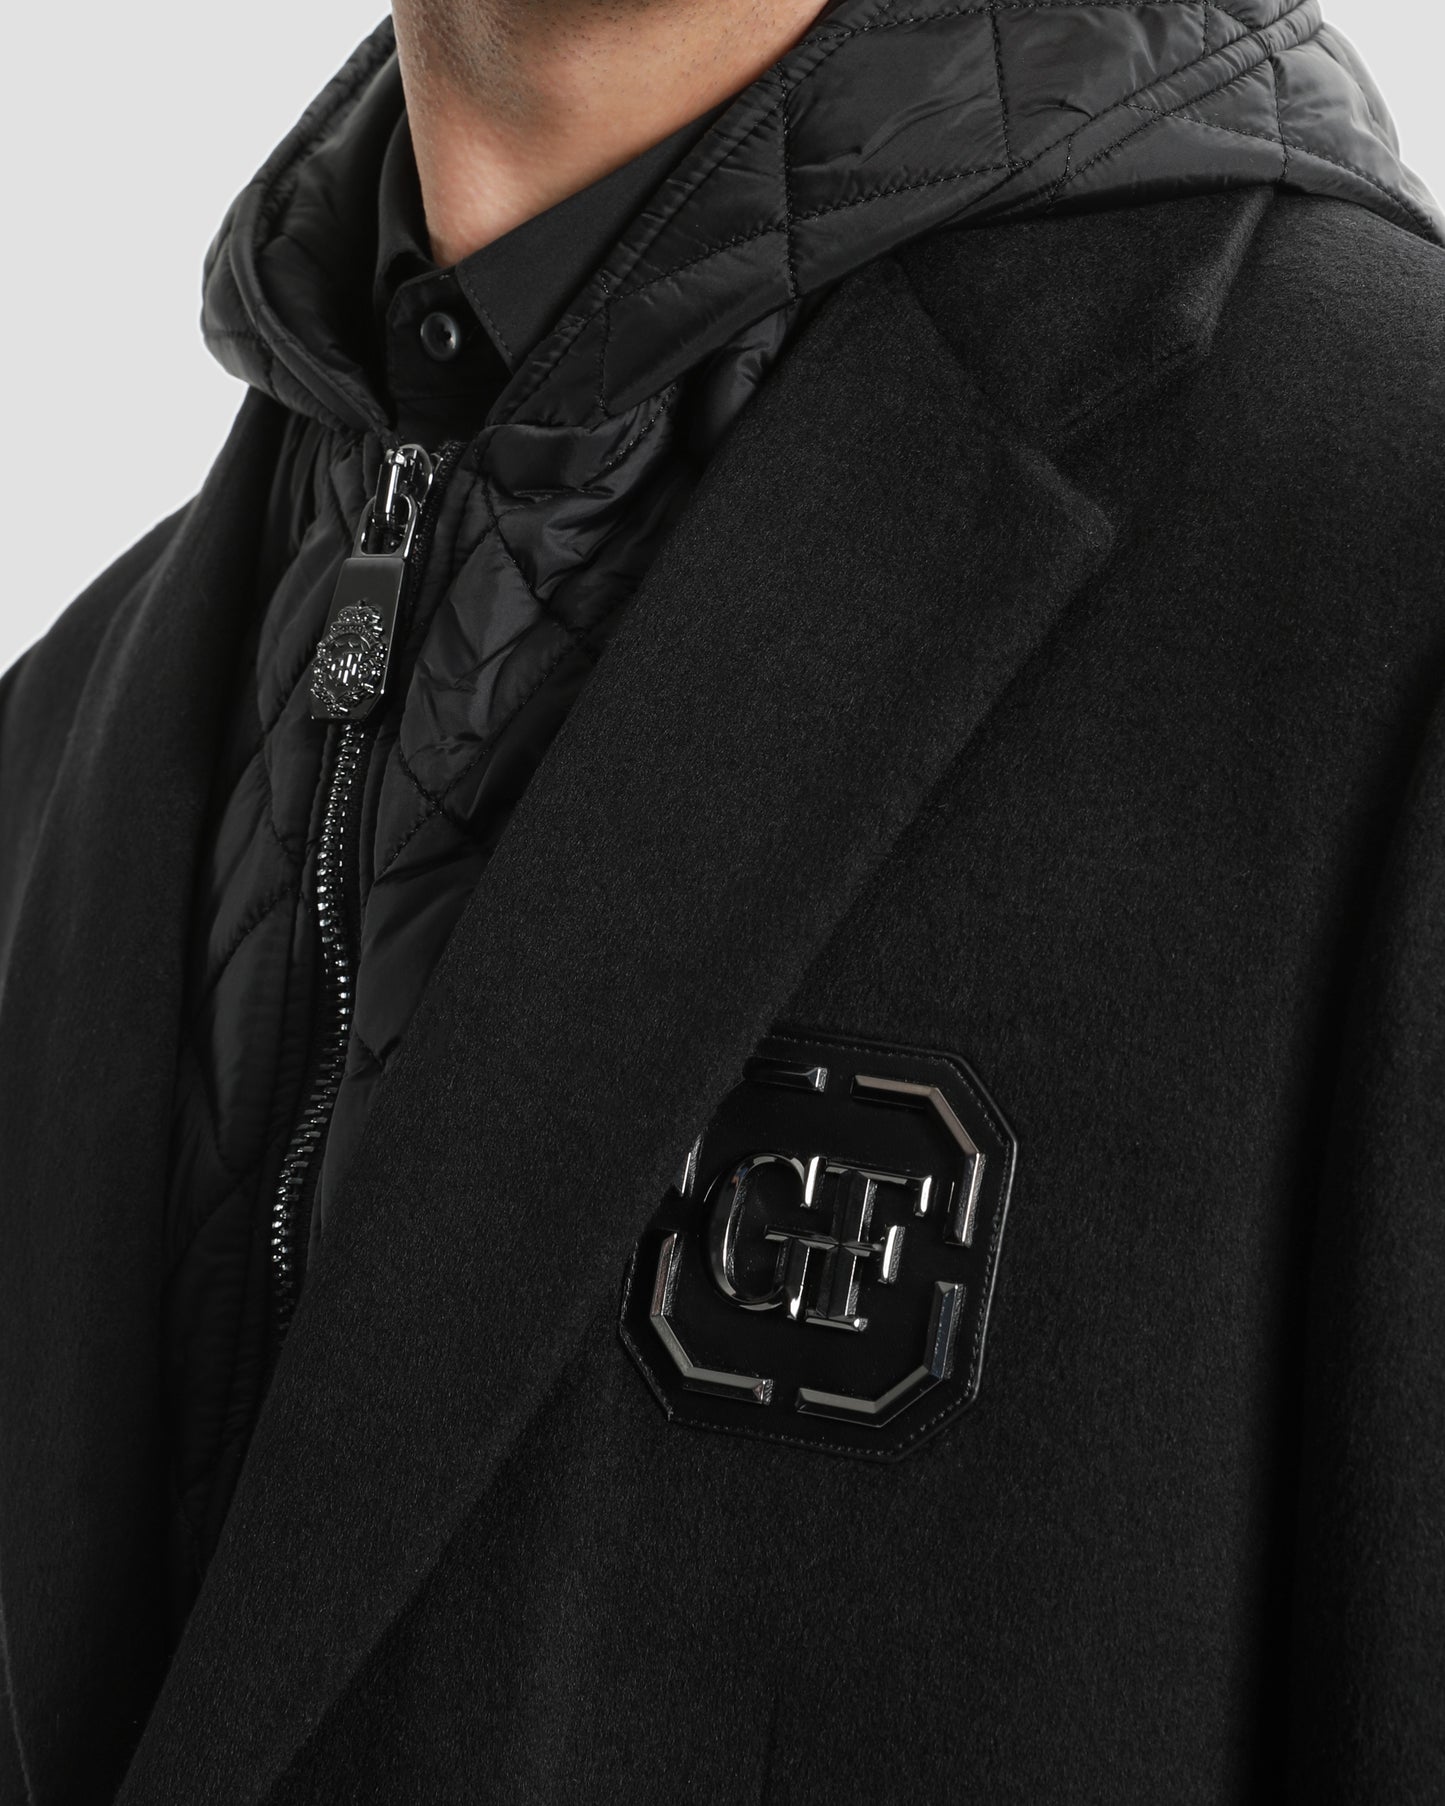 Detachable Hooded Coat